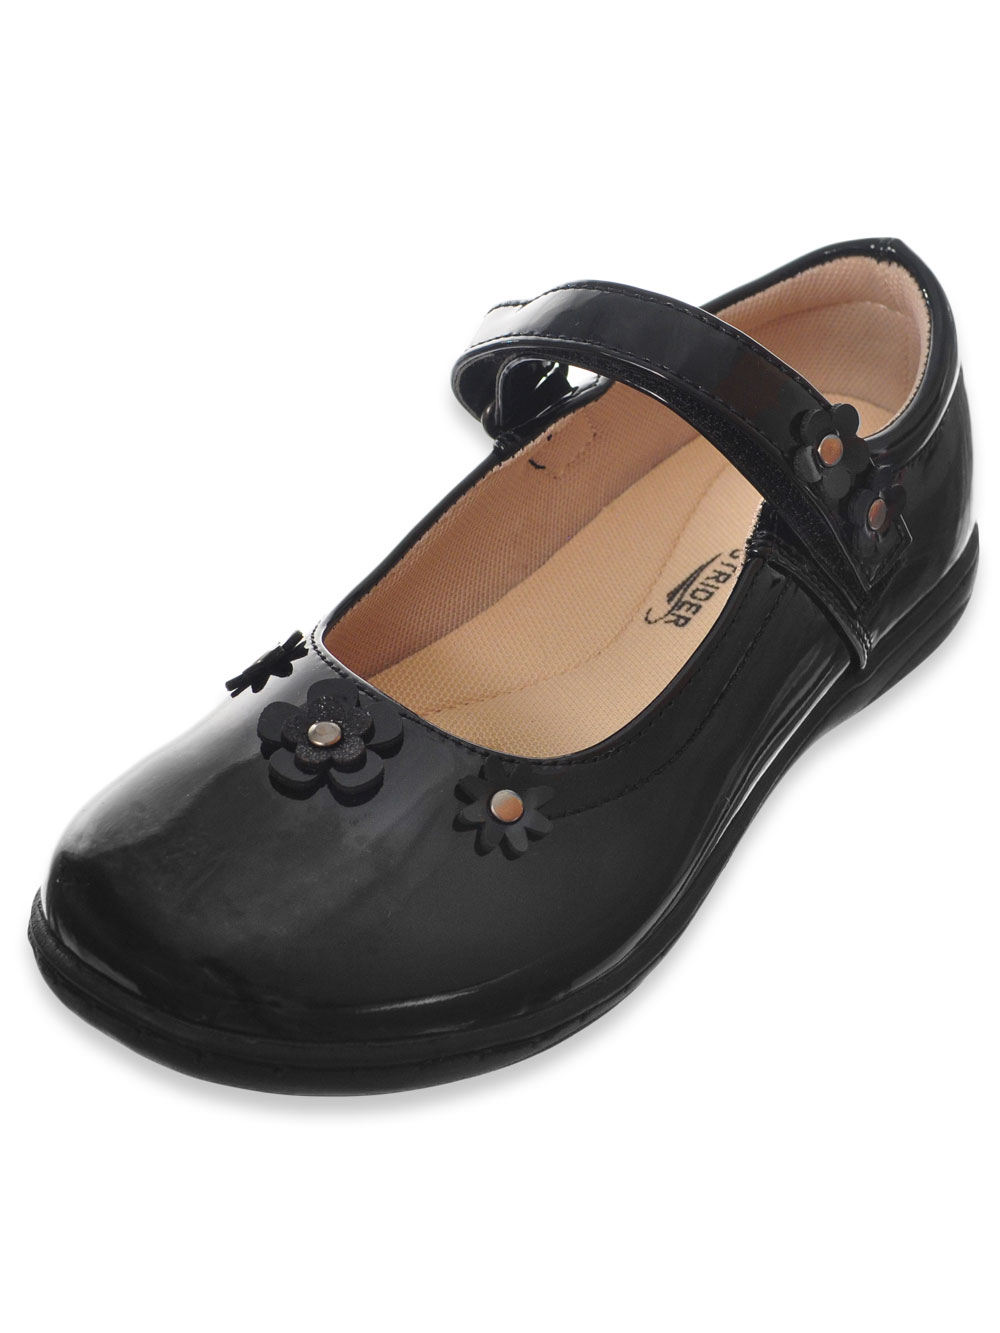 black mary jane infant shoes